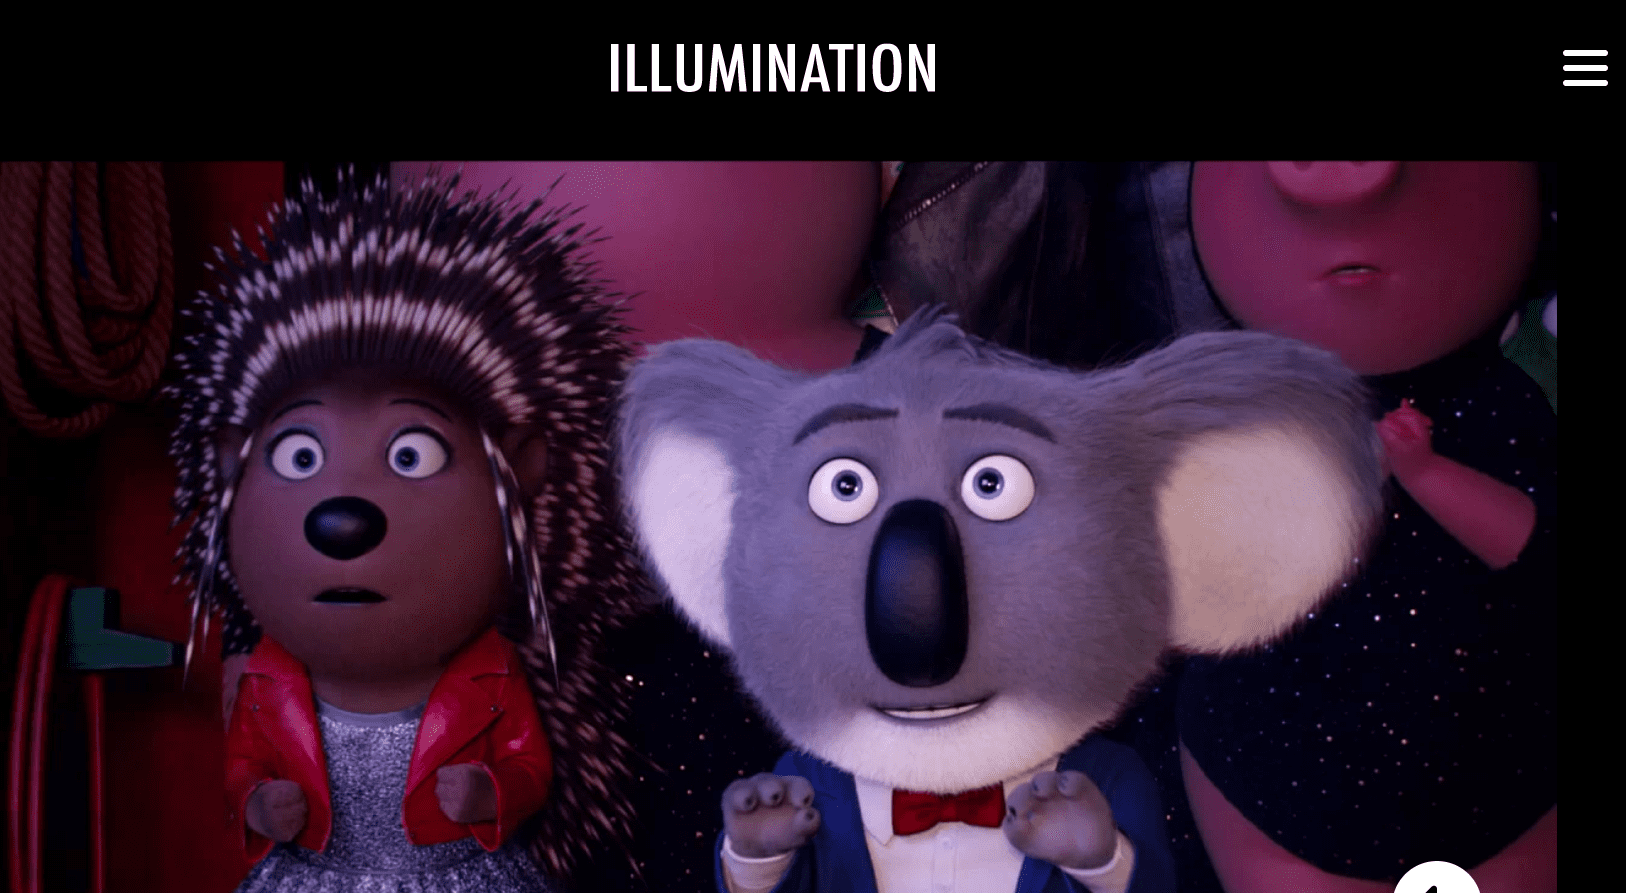 Illumination Animation Studio